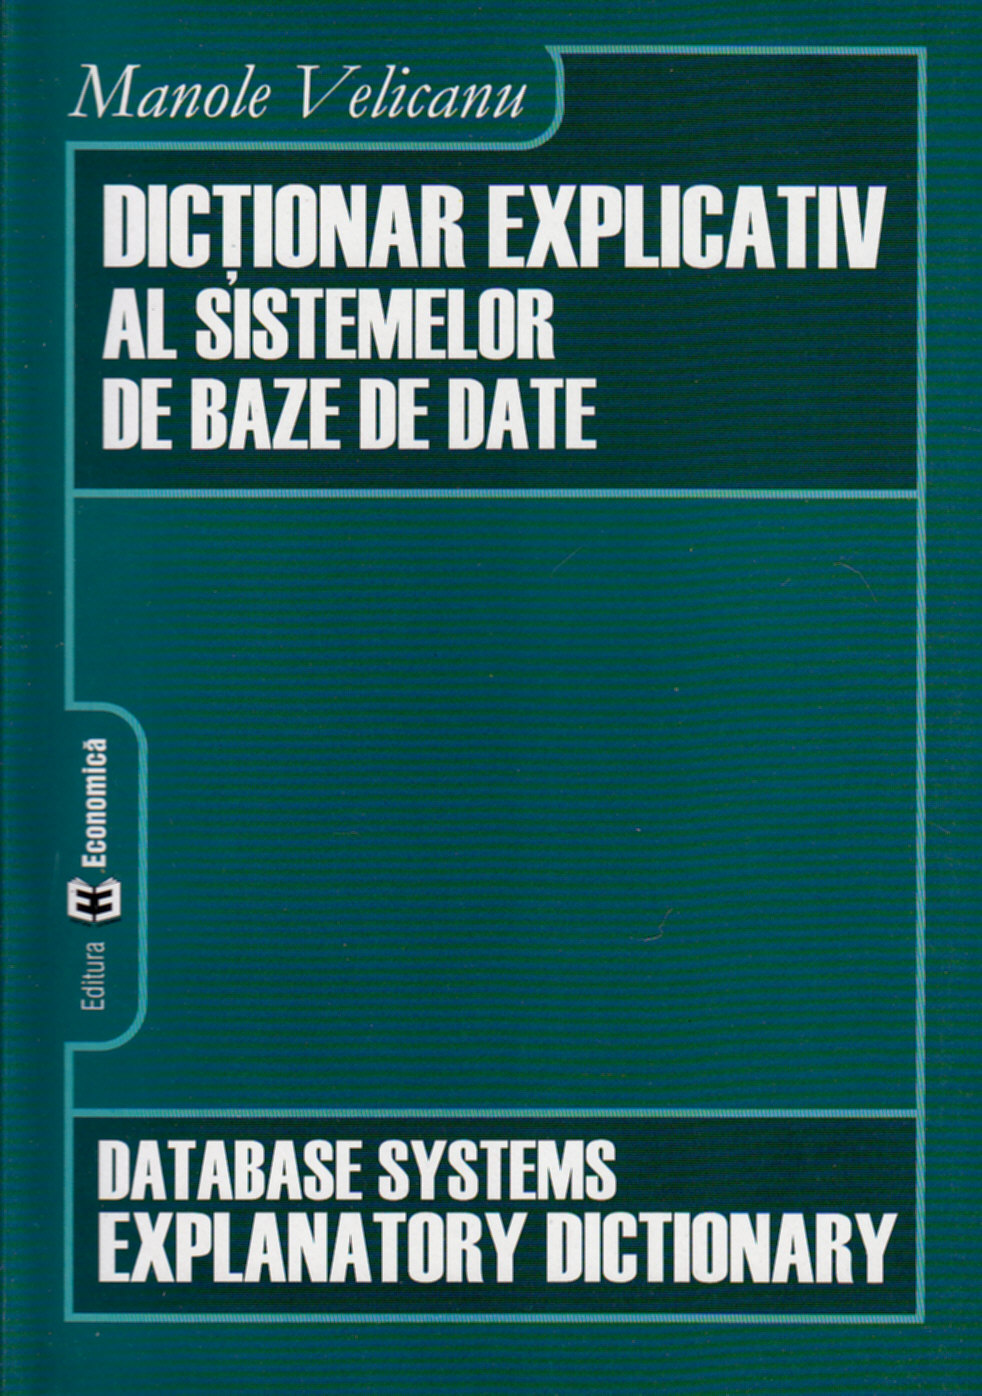 Dictionar explicativ al sistemelor de baze de date - Manole Velicanu